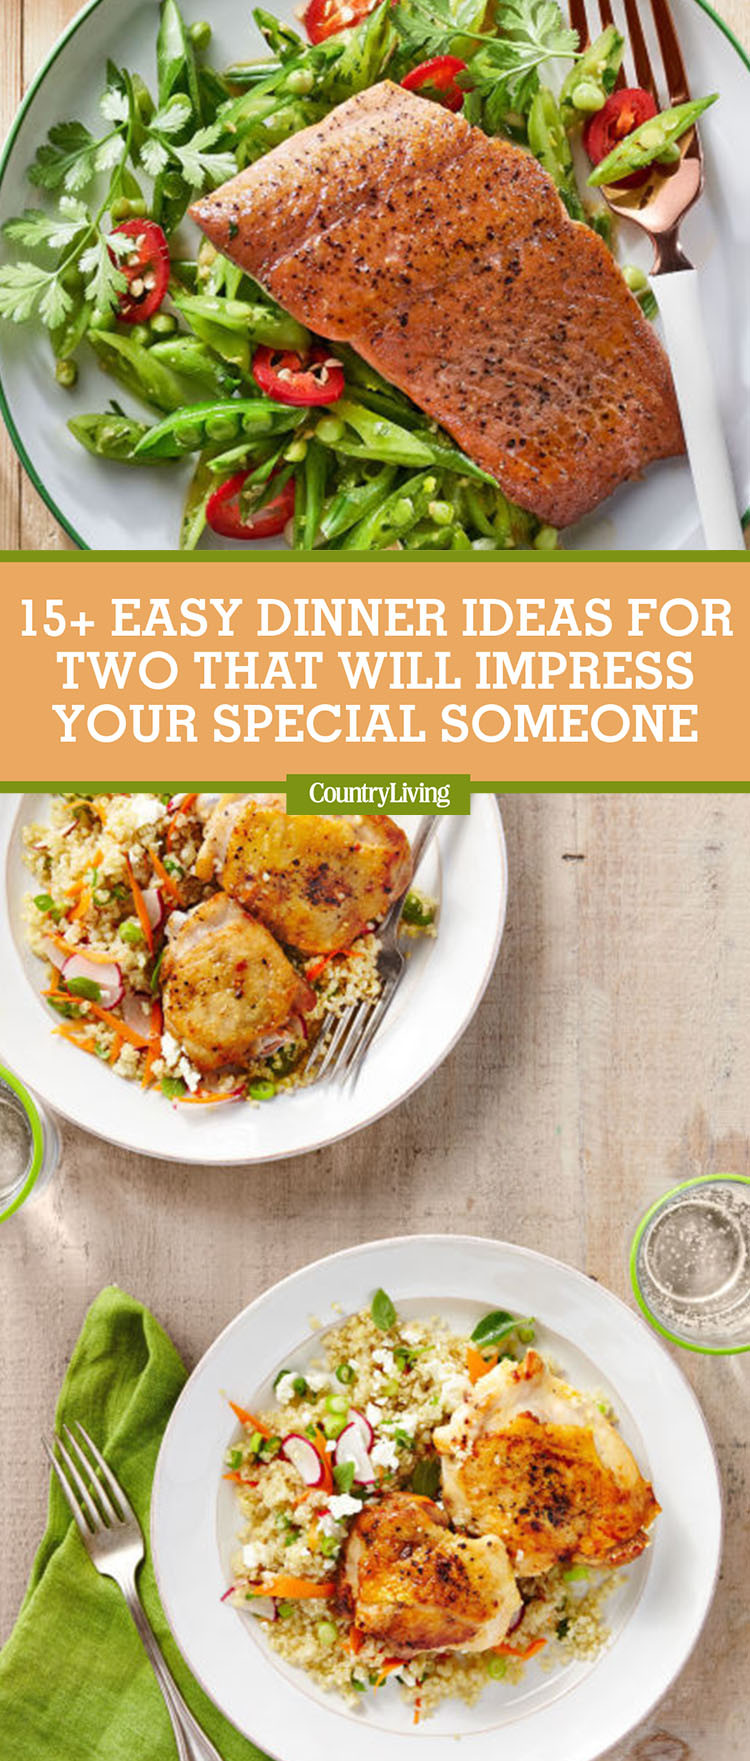 Easy Dinner For 2
 17 Easy Dinner Ideas for Two Romantic Dinner for Two Recipes